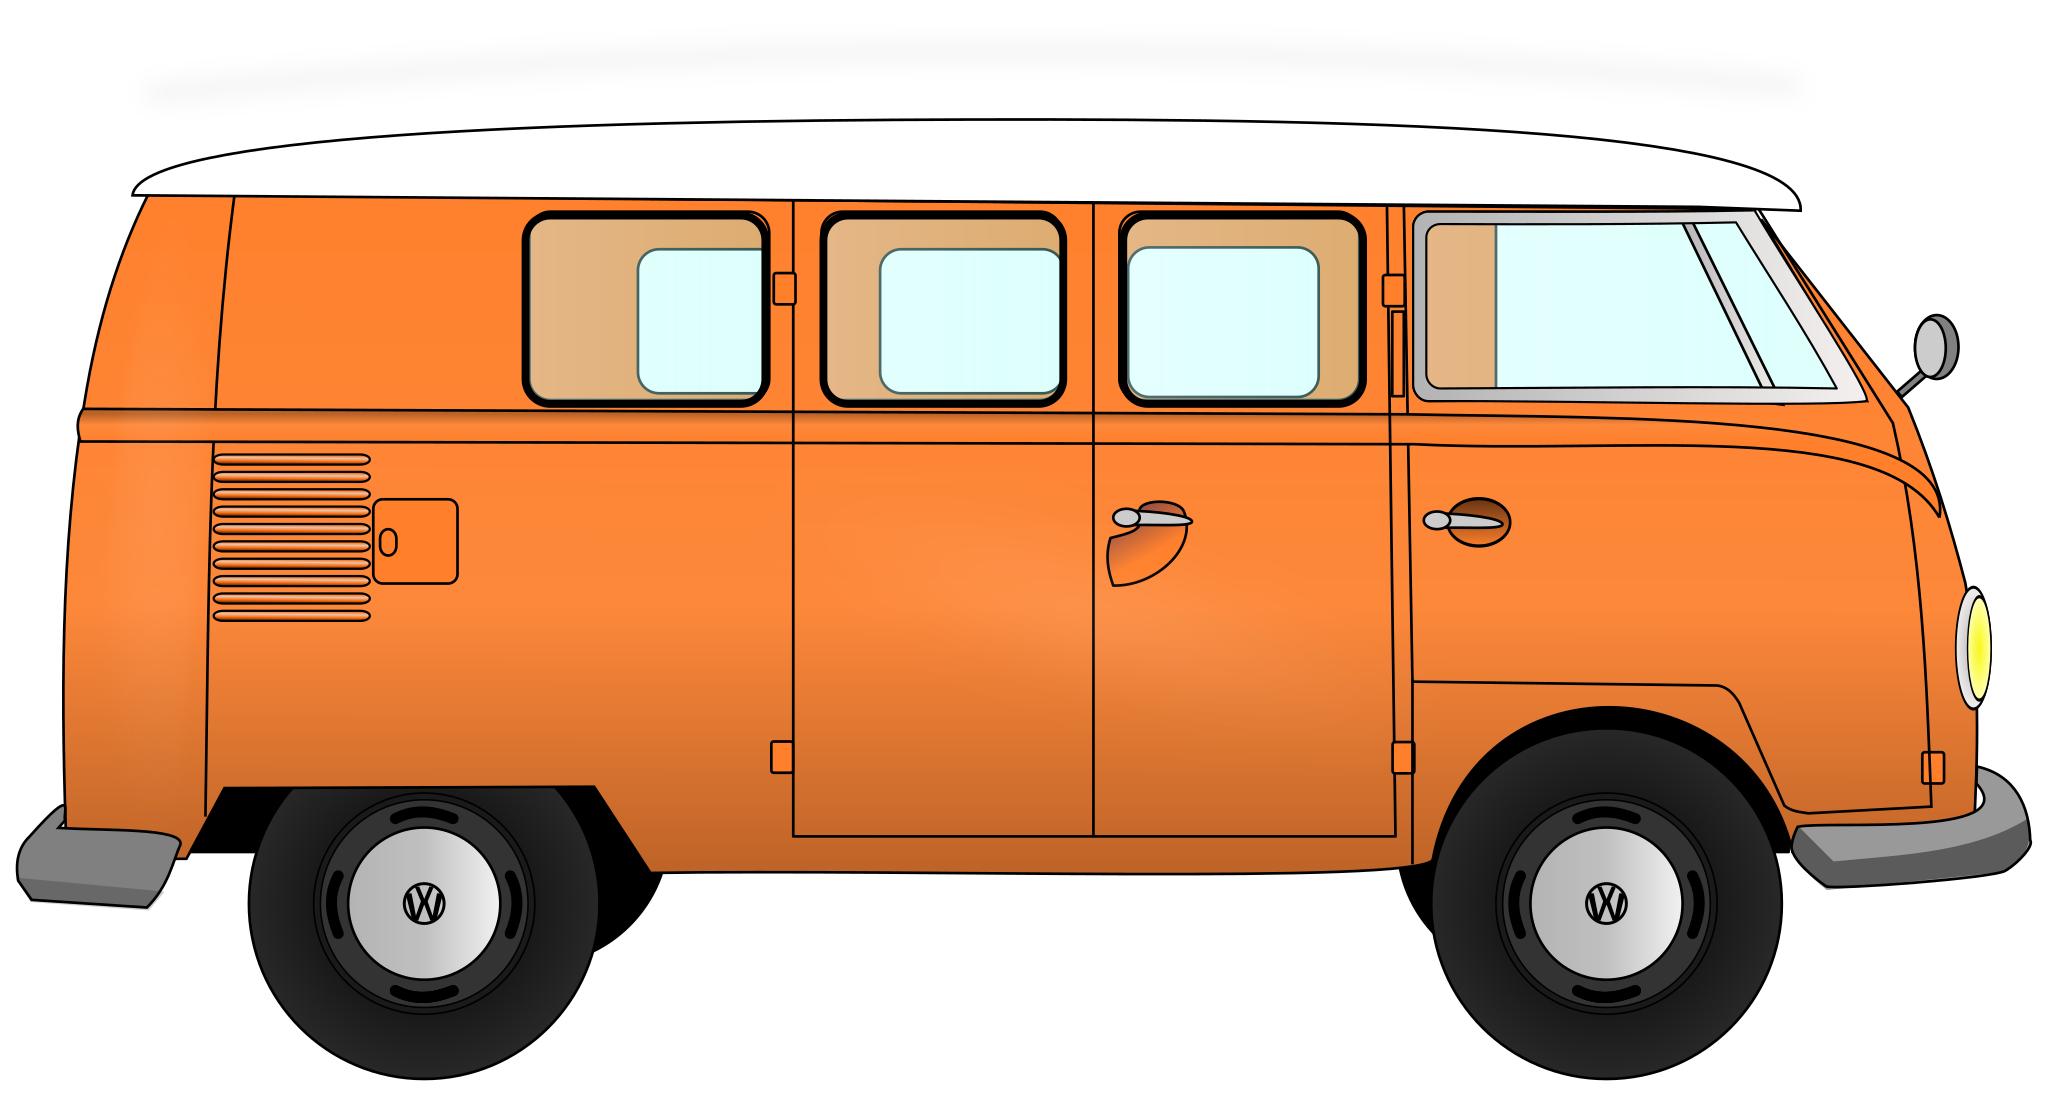 Фургон Volkswagen Bus vector